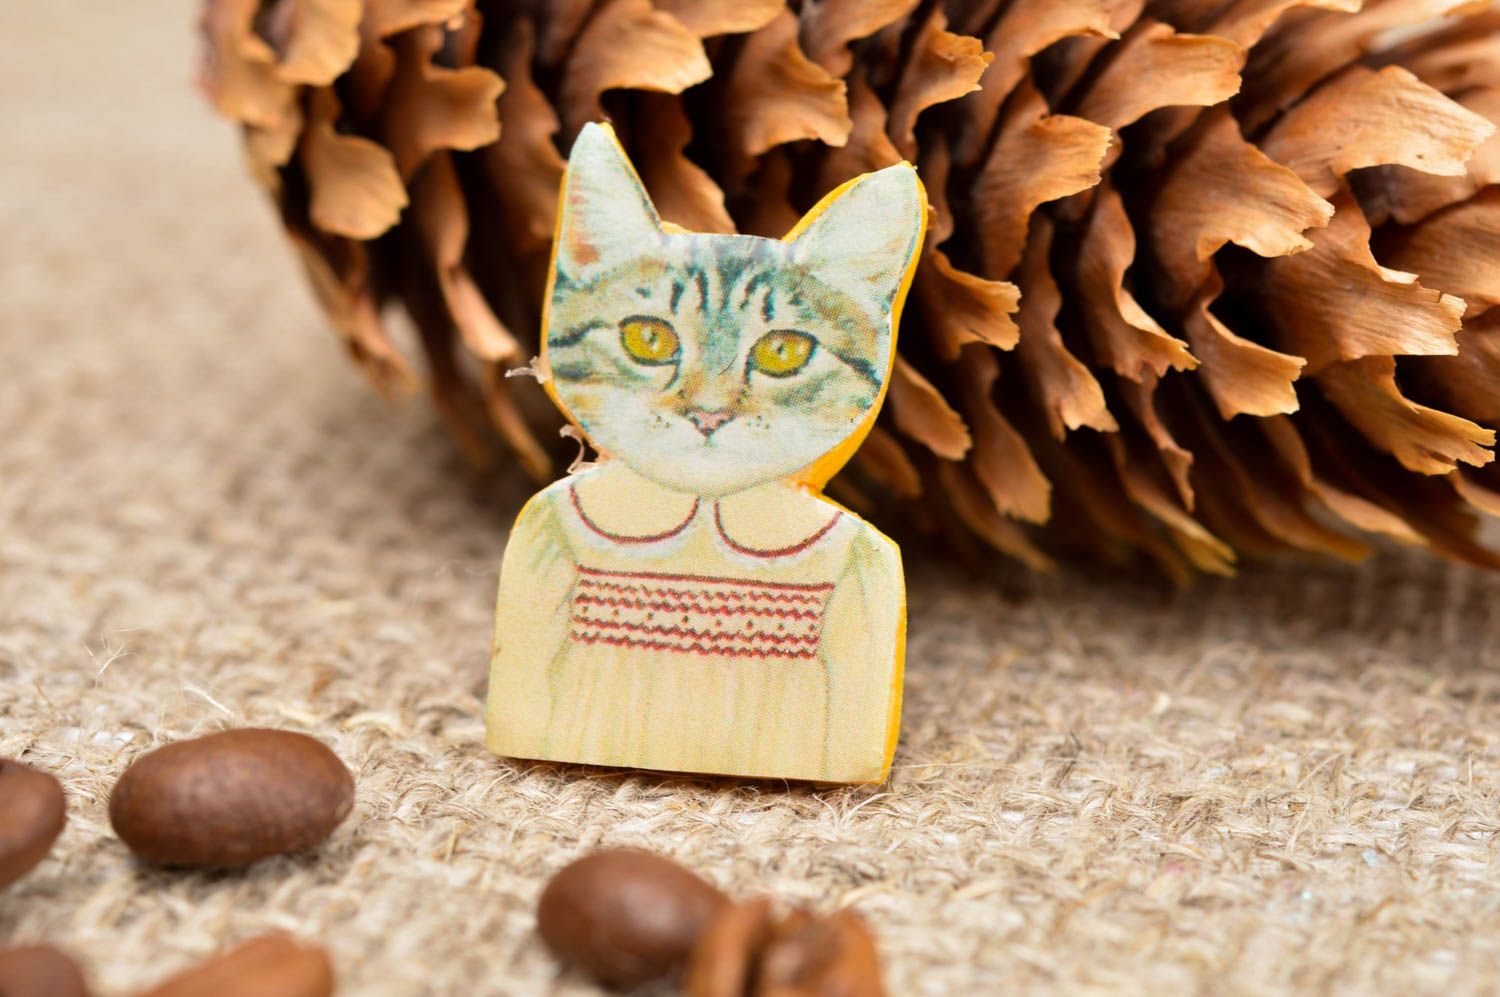 Broche hecho a mano con forma de gata bonita accesorio de moda regalo original foto 1